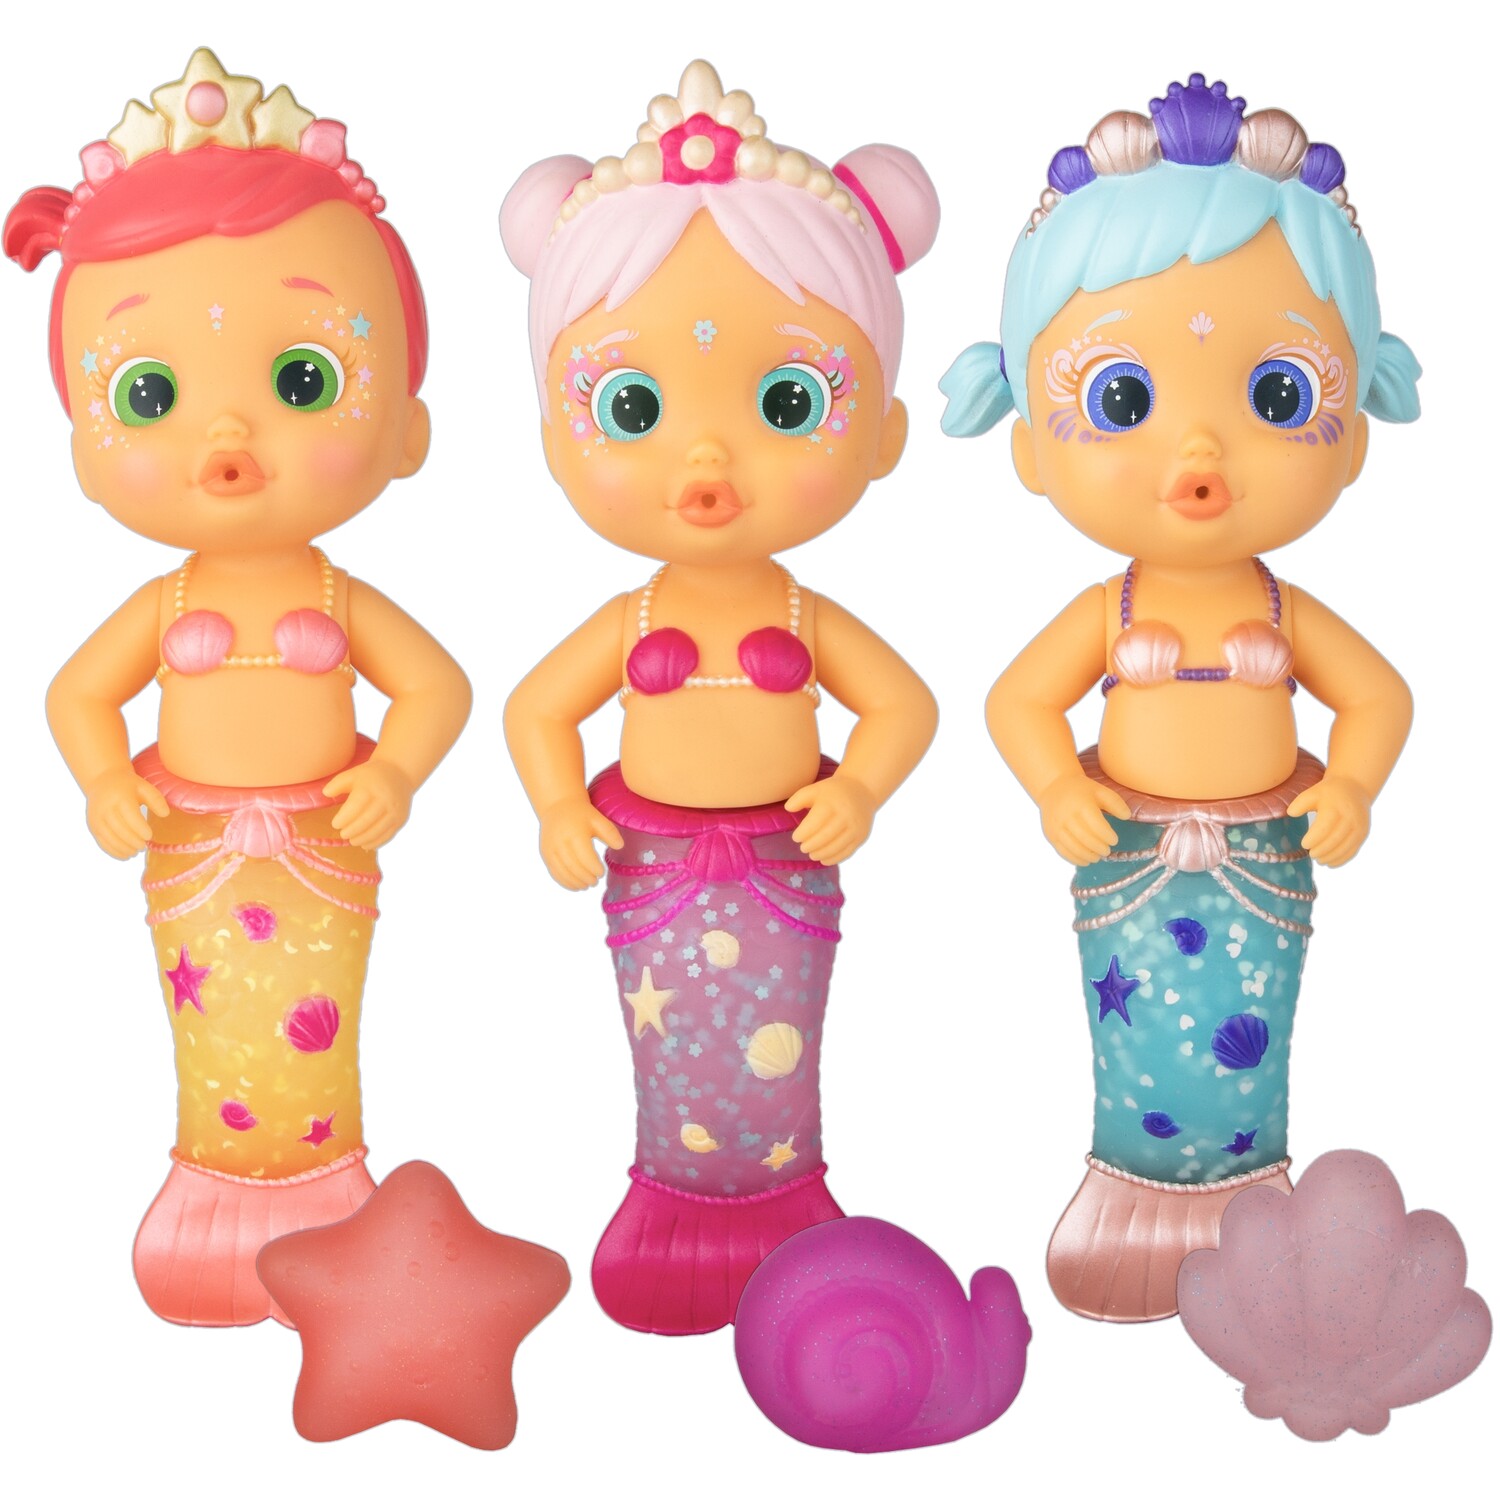 Single Bloopies Mermaids Series 2 Bath Toy in Assorted styles Image 1